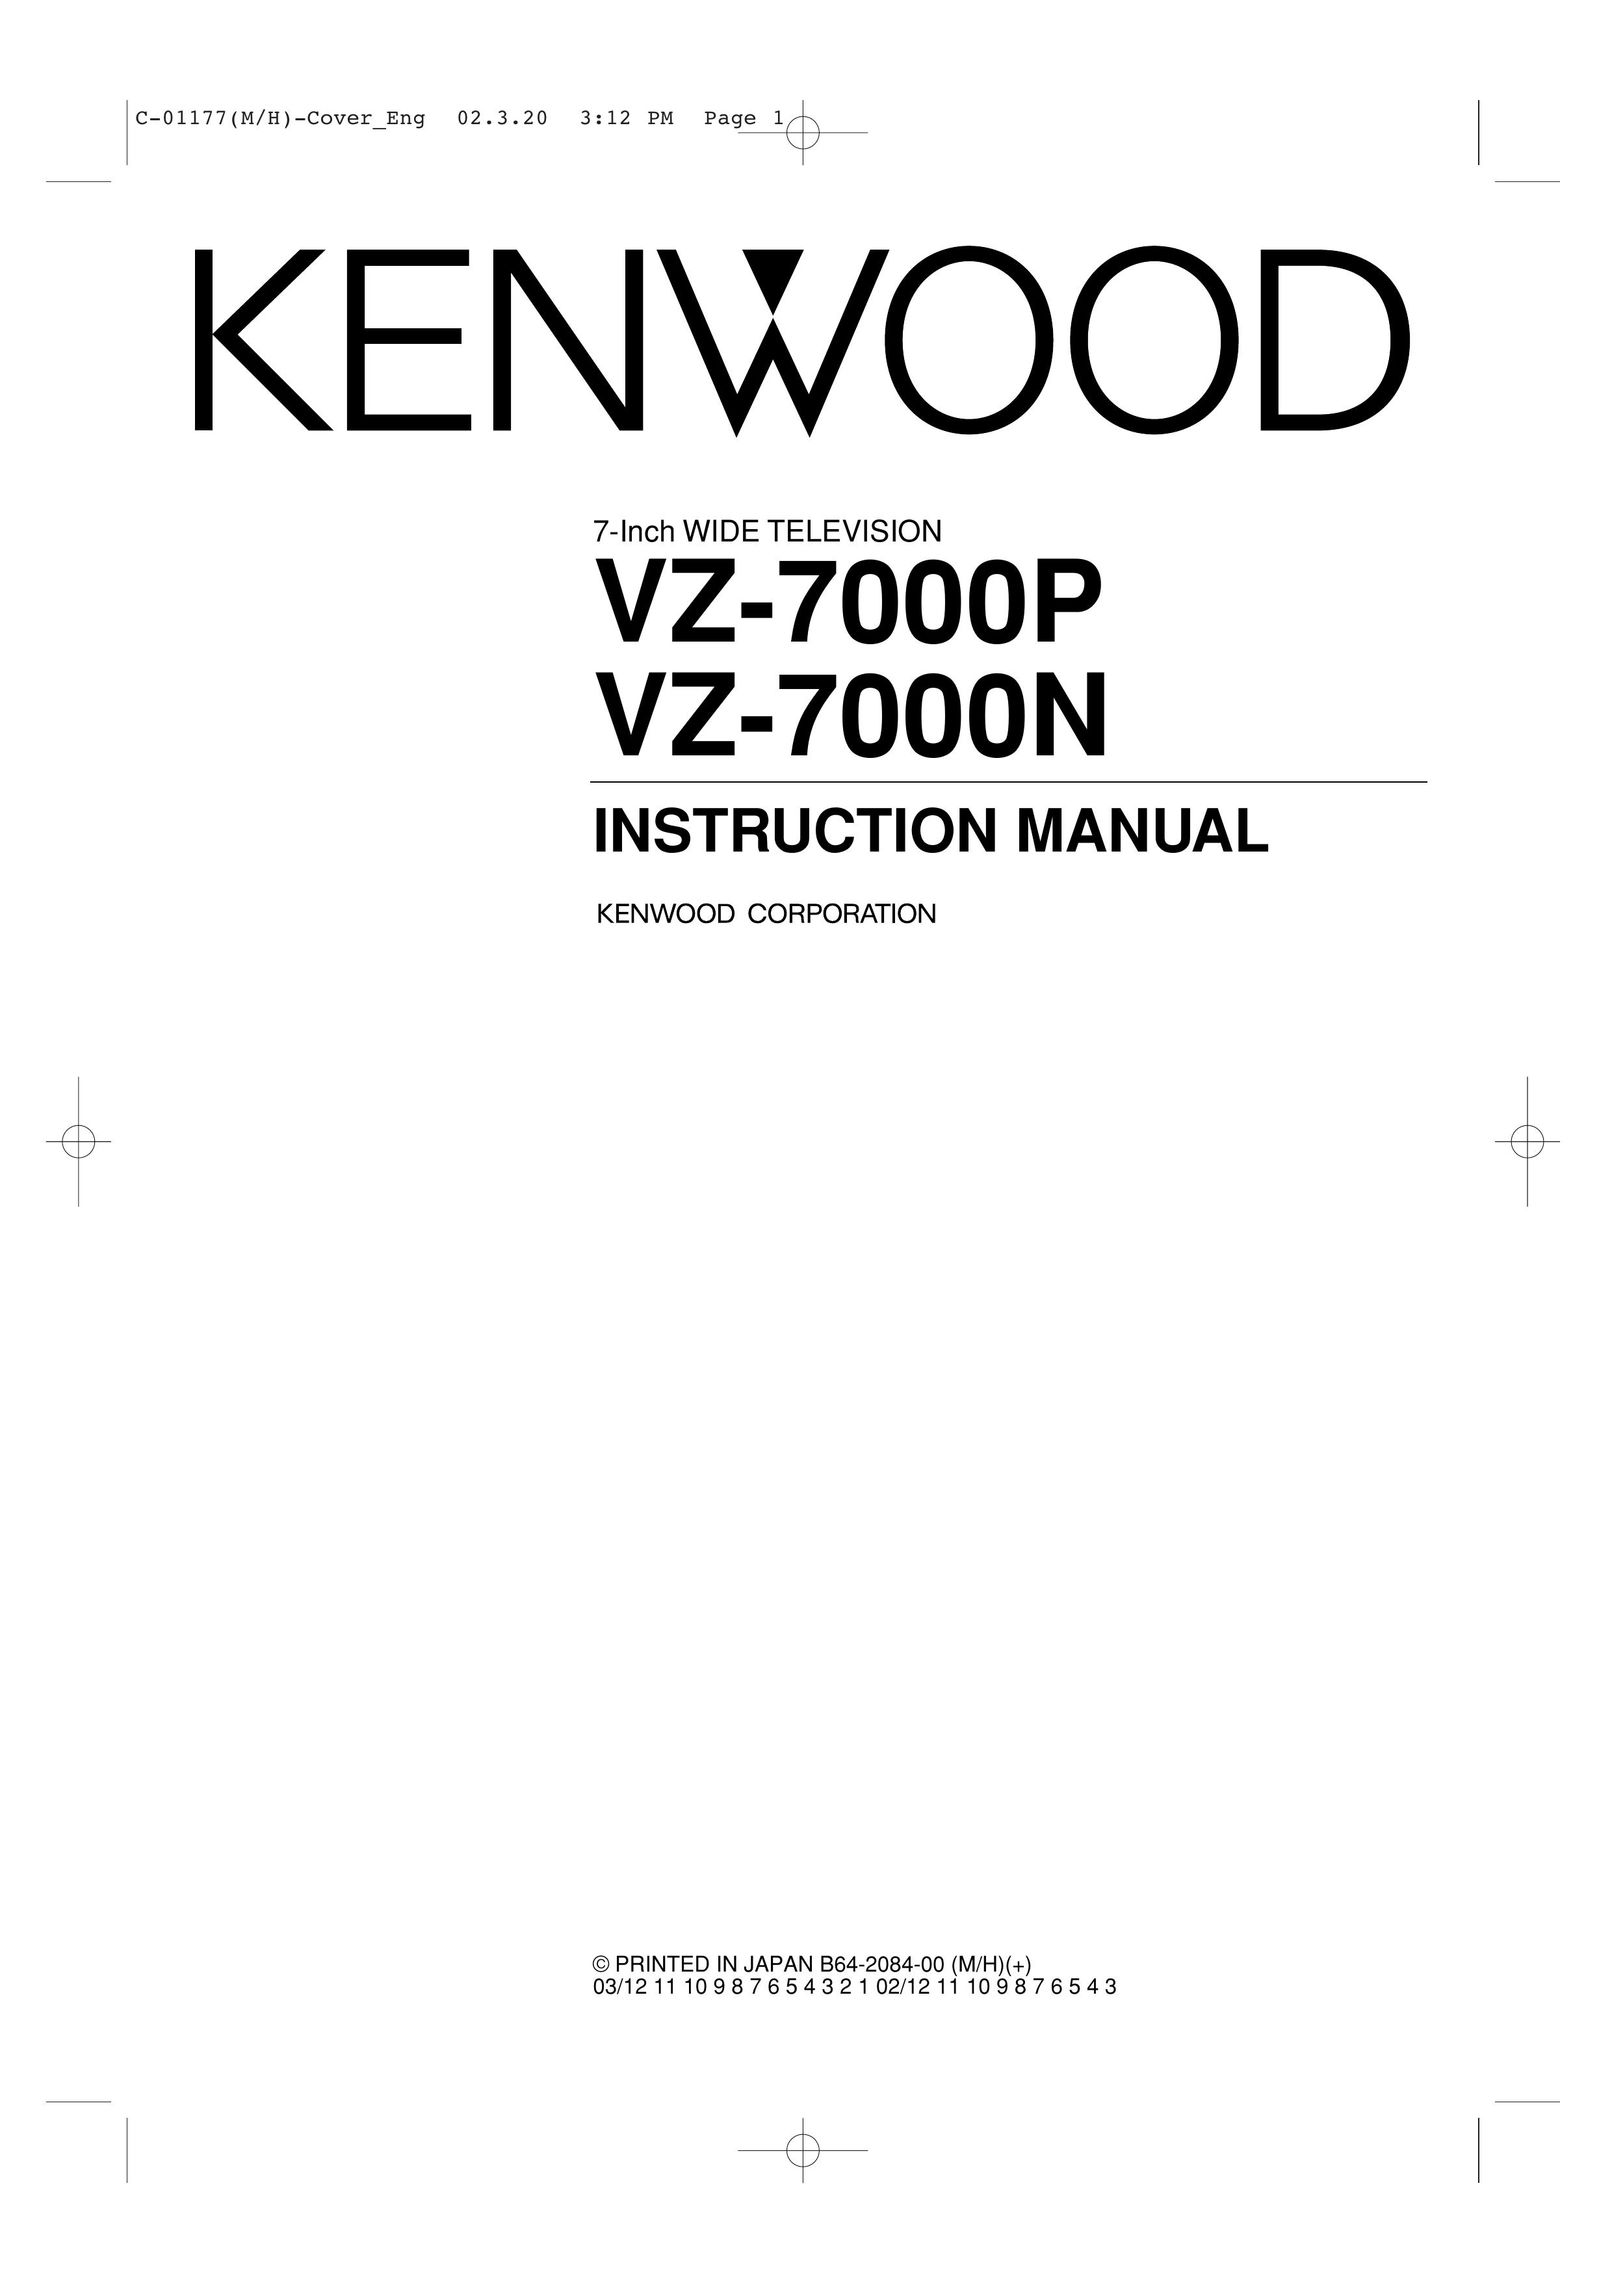 Kenwood VZ-7000N CRT Television User Manual